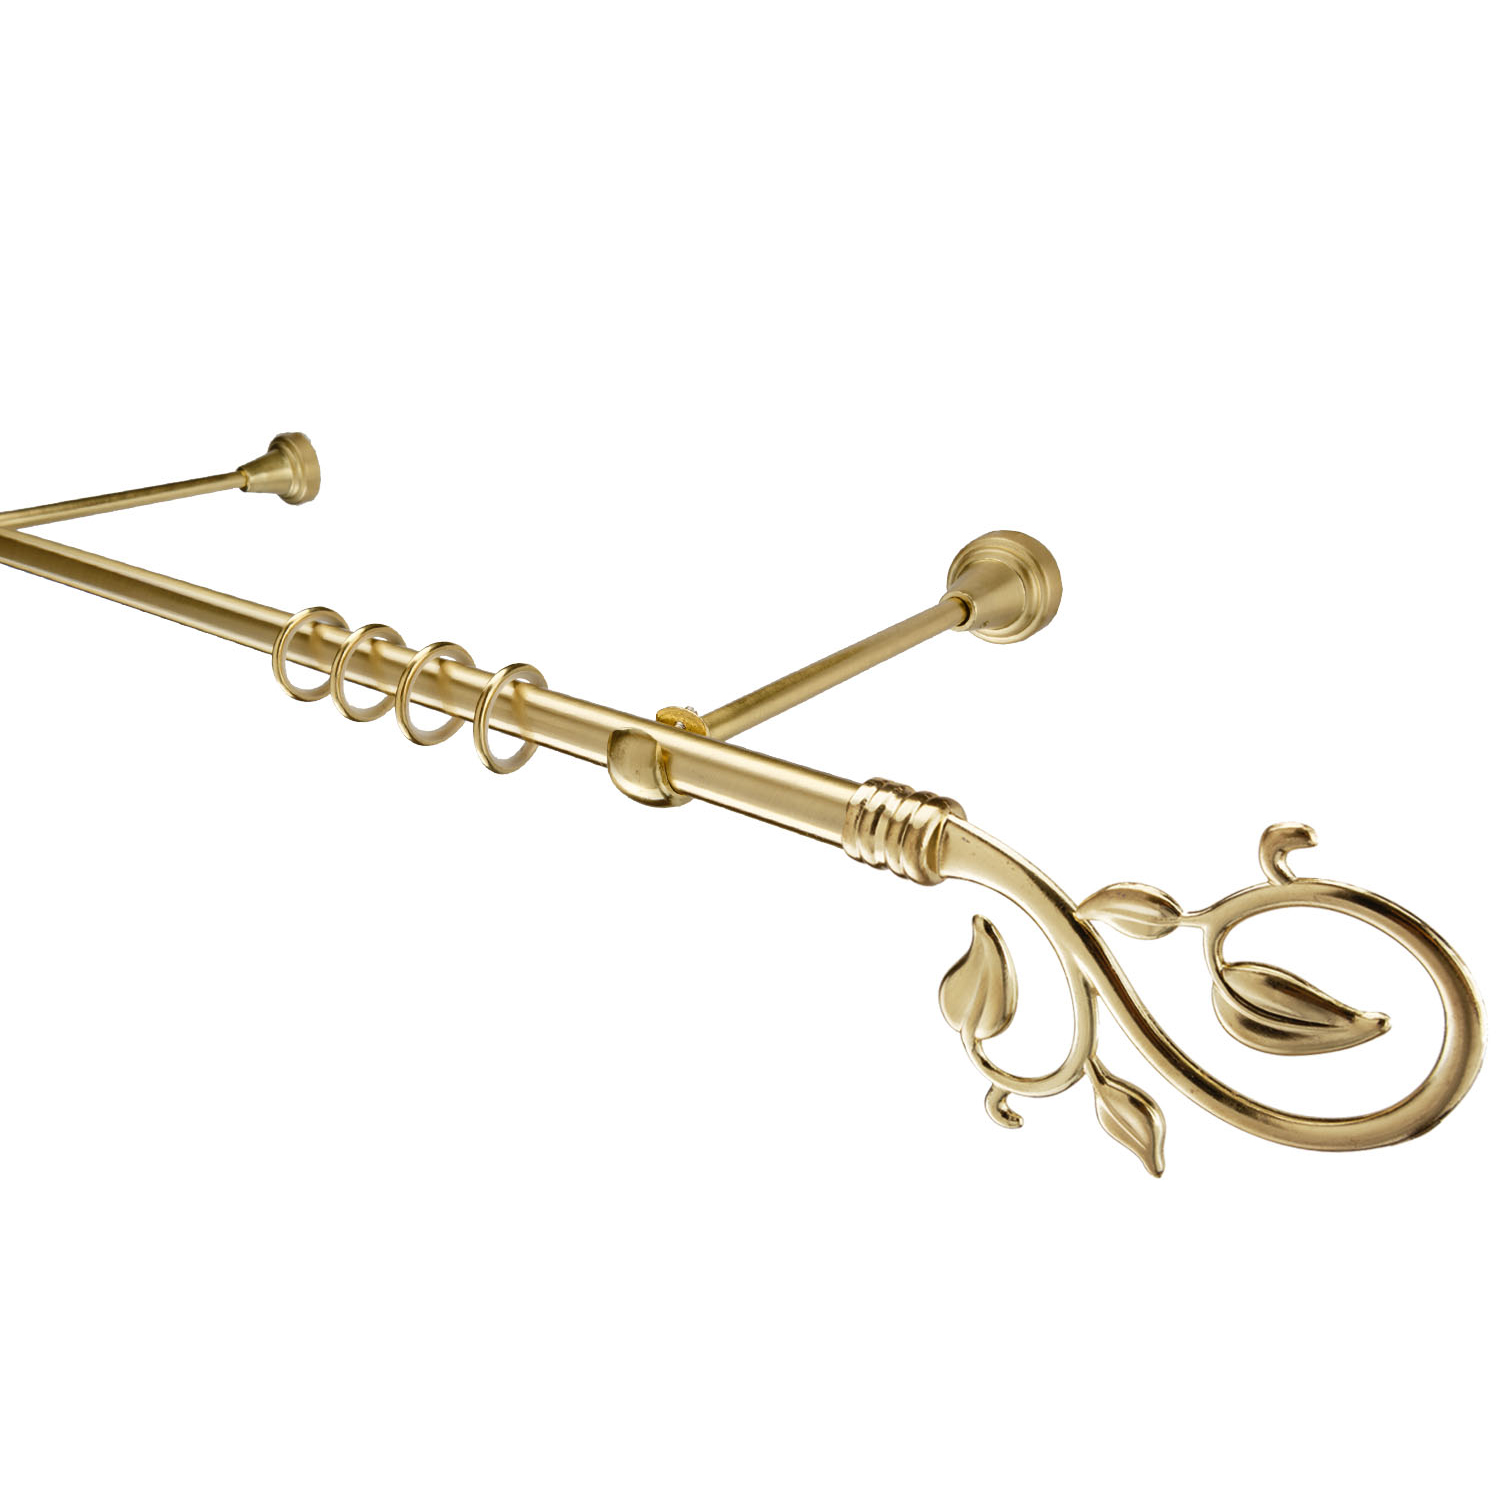 Металлический карниз для штор Амели, однорядный 16 мм, золото, гладкая штанга, длина 200 см - фото Wikidecor.ru